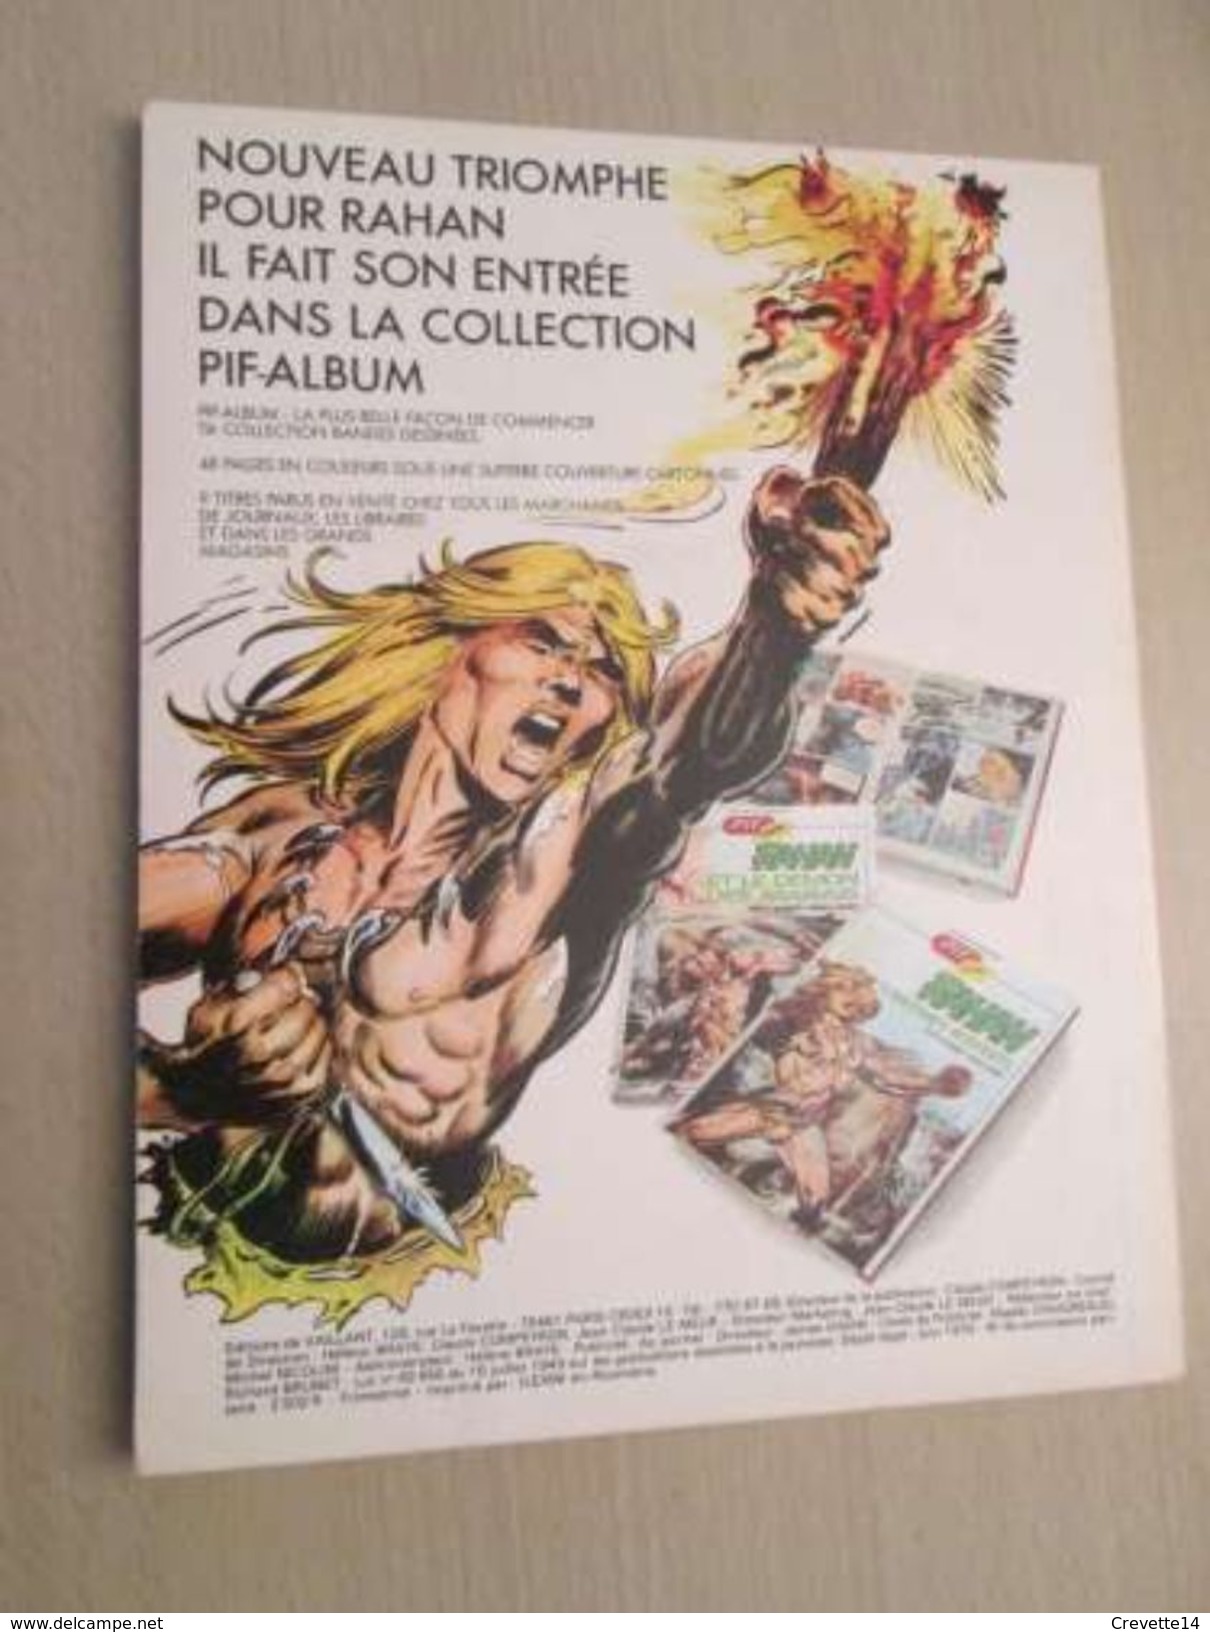 BD2006 Edition Originale De 1974 RAHAN - CHERET - 1e SERIE , N°18 , Coté 15 Euros Au Dernier BDM  ,  TRES BON ETAT , Voi - Rahan